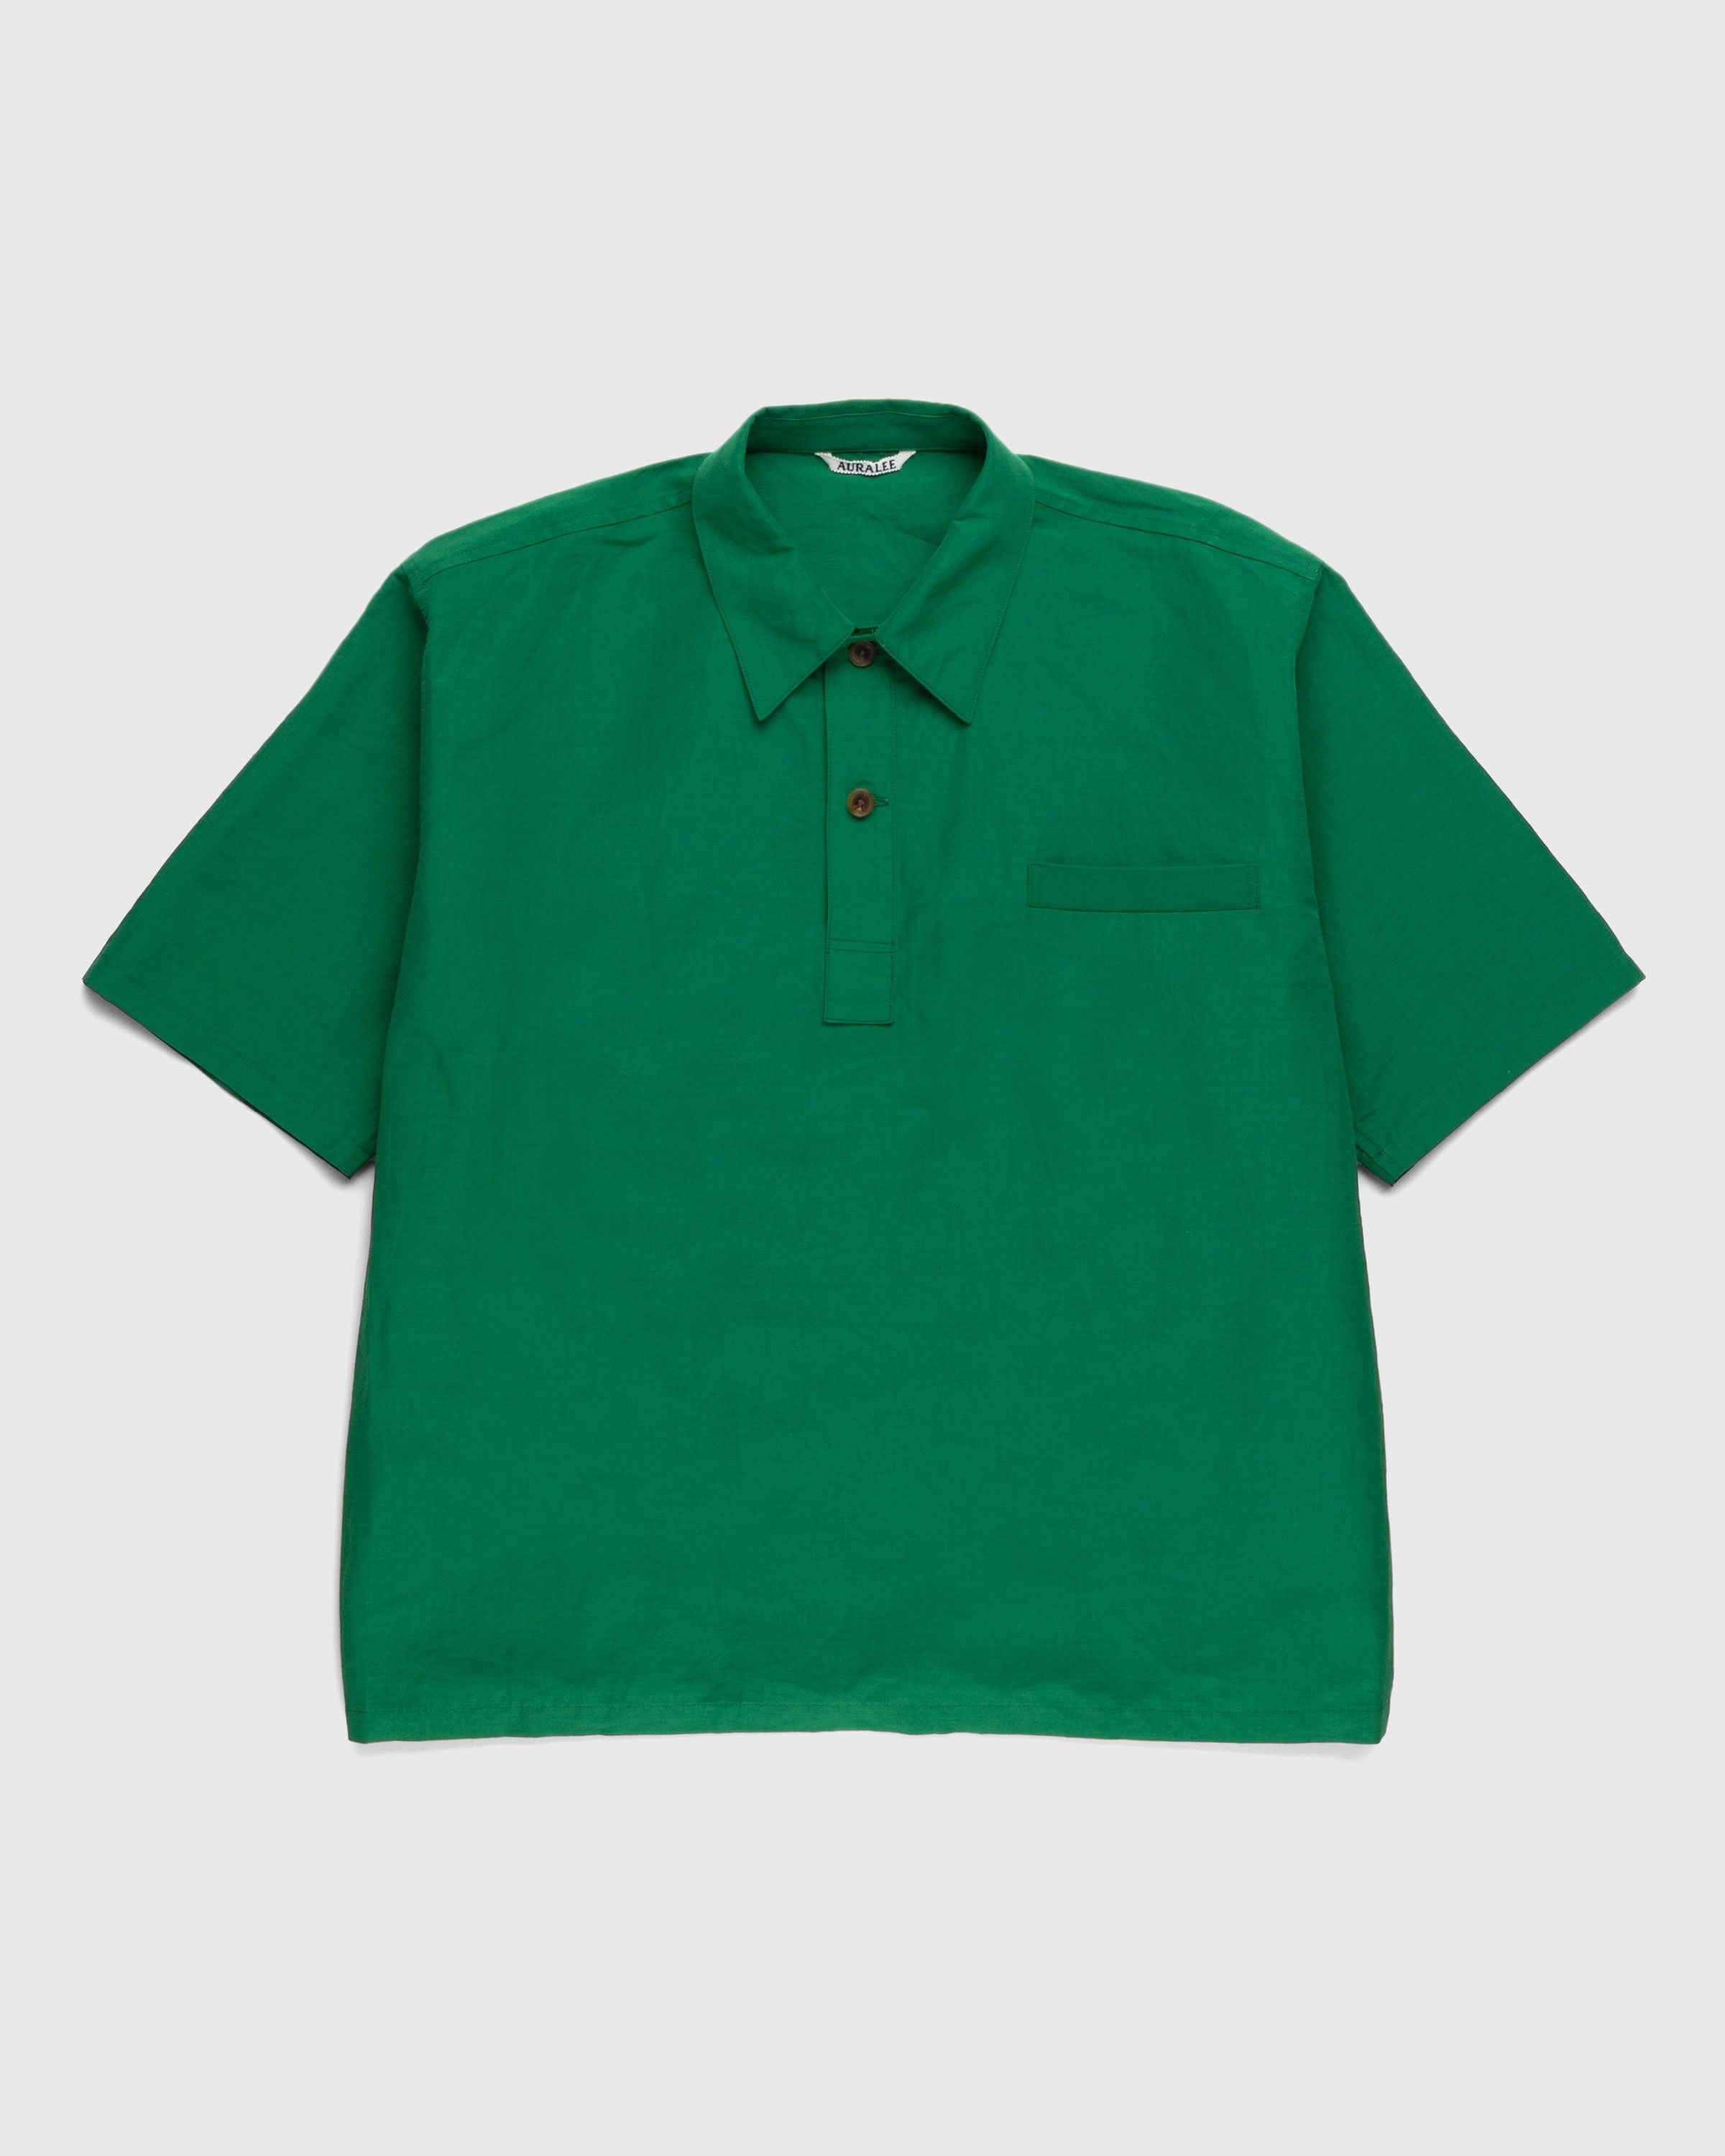 Auralee – High Density Finx Linen Weather Shirt Green - Shirts - Green - Image 1